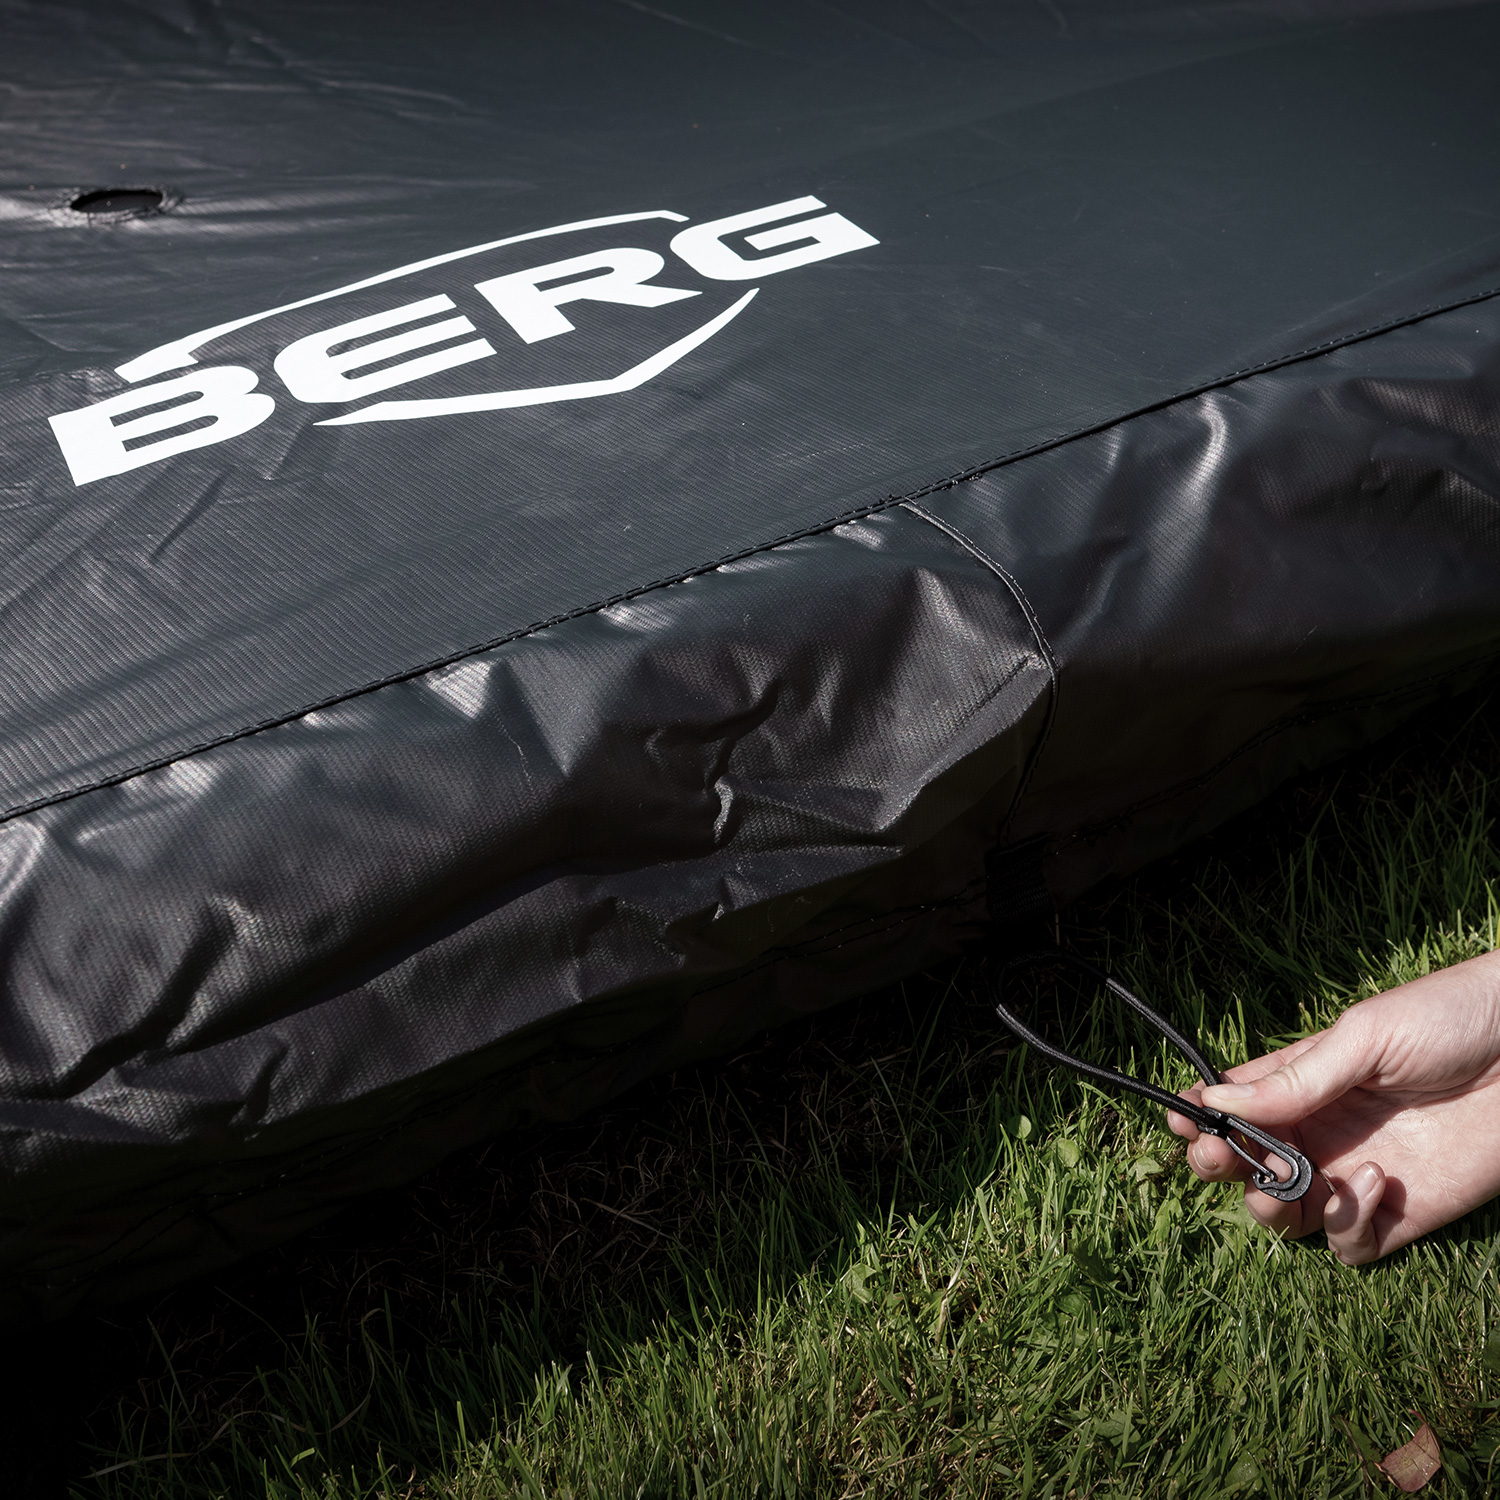 BERG Trampolin Wetterschutzhülle Extra Black für ULTIM 200 x 200 cm Außenrand (NEU)